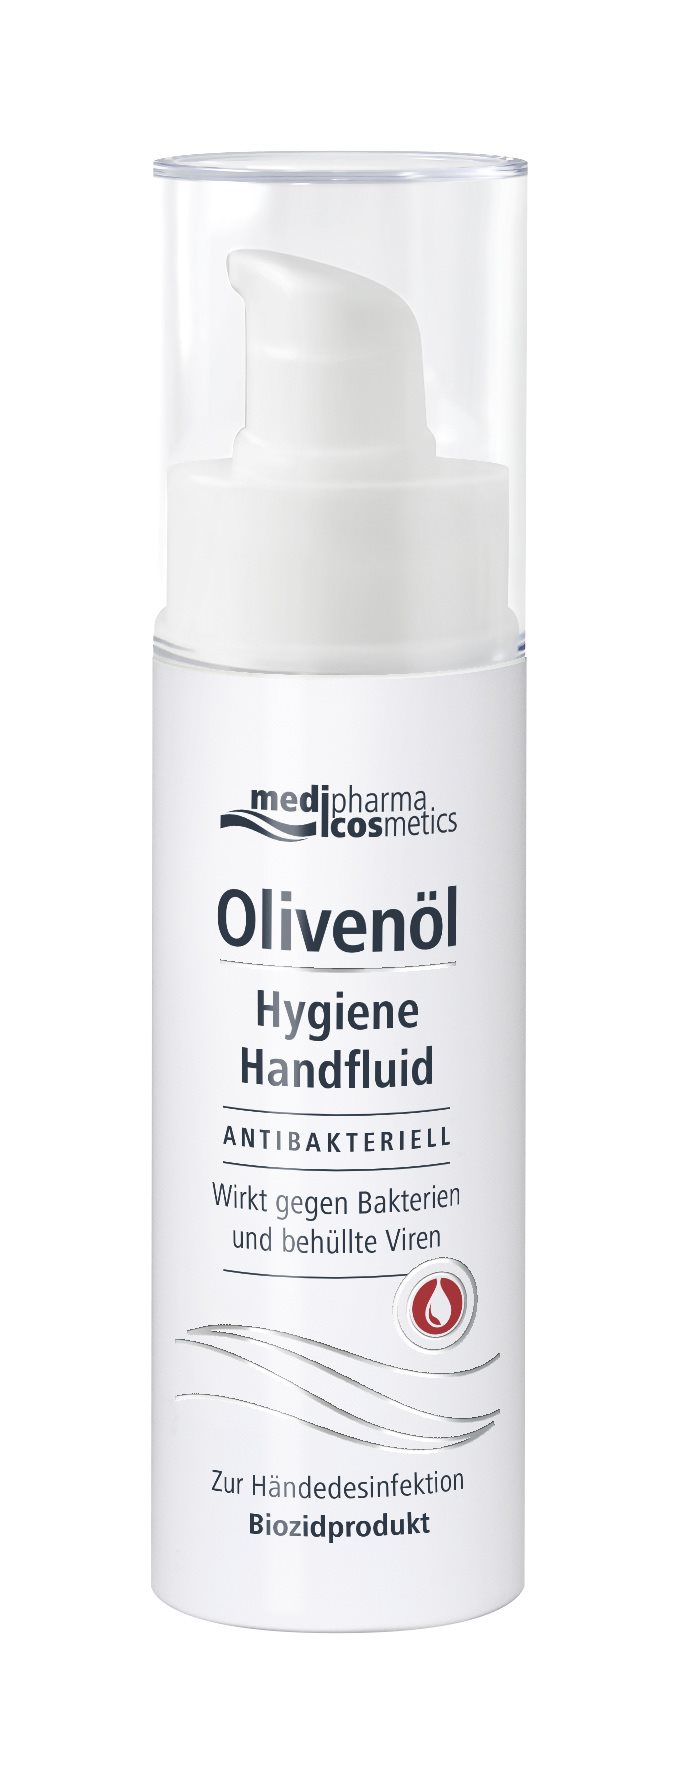 medipharma-cosmetics-Olivenoel-Hygiene-Handfluid-ANTIBAKTERIELL